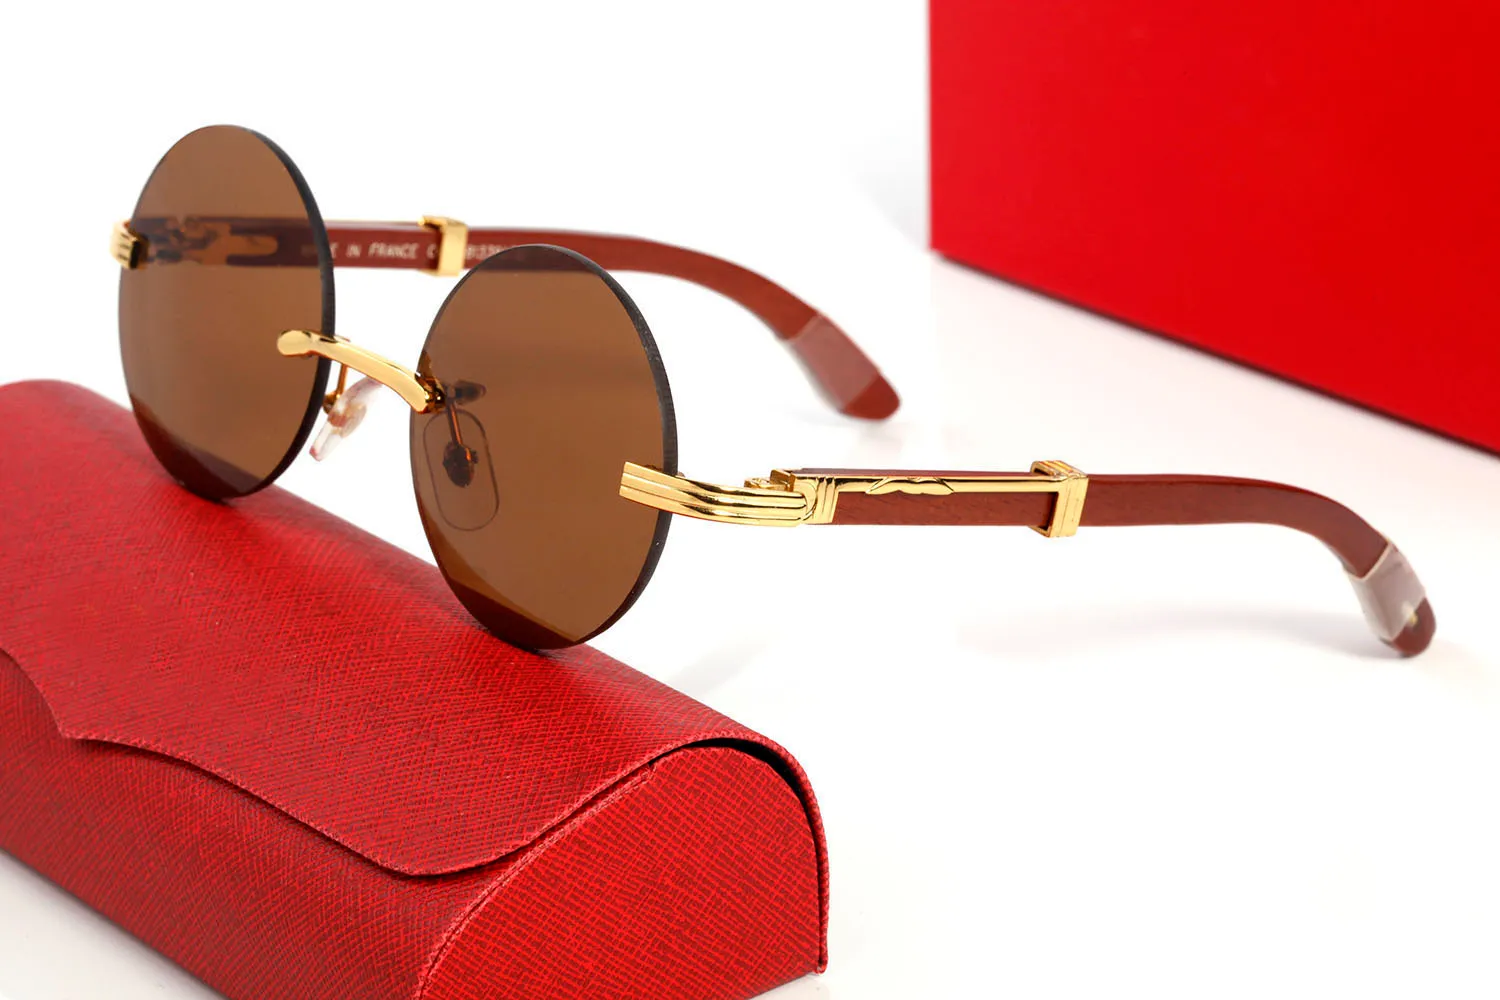 Round Buffalo Horn Sunglasses for Men women Framed sun glasses vintage designer eyeglasses in Gold Silver Frame Brown Wood legs ey259B